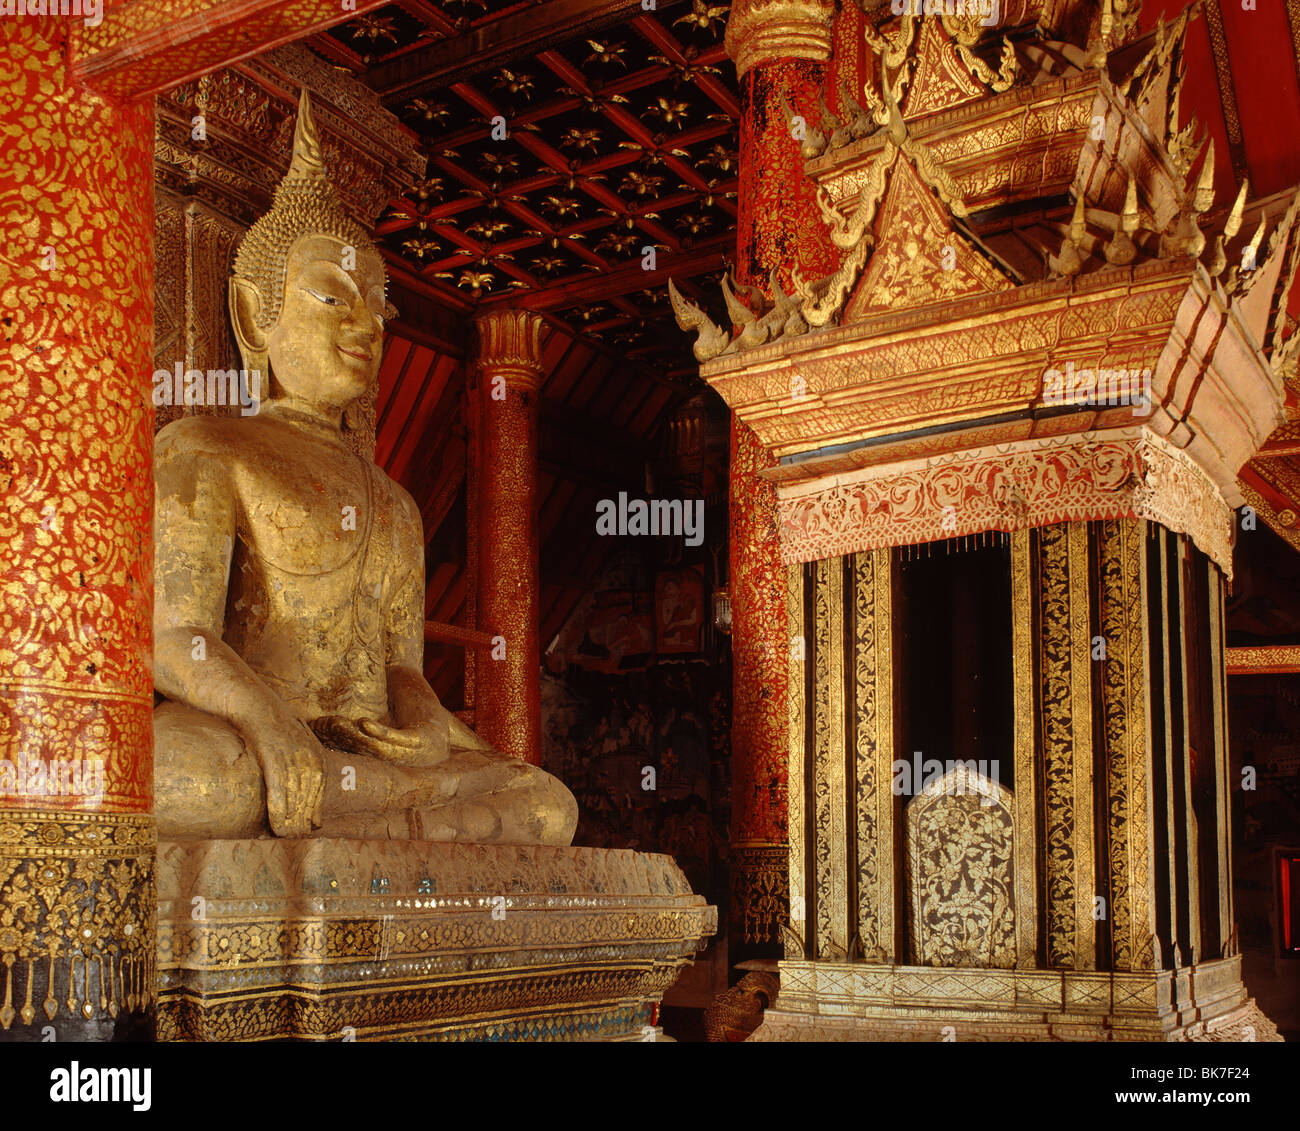 Bouddha et Thammat la prédication (président), le Wat Phumin, ville de Nan, Thaïlande, Asie du Sud-Est, Asie&# 10, Banque D'Images